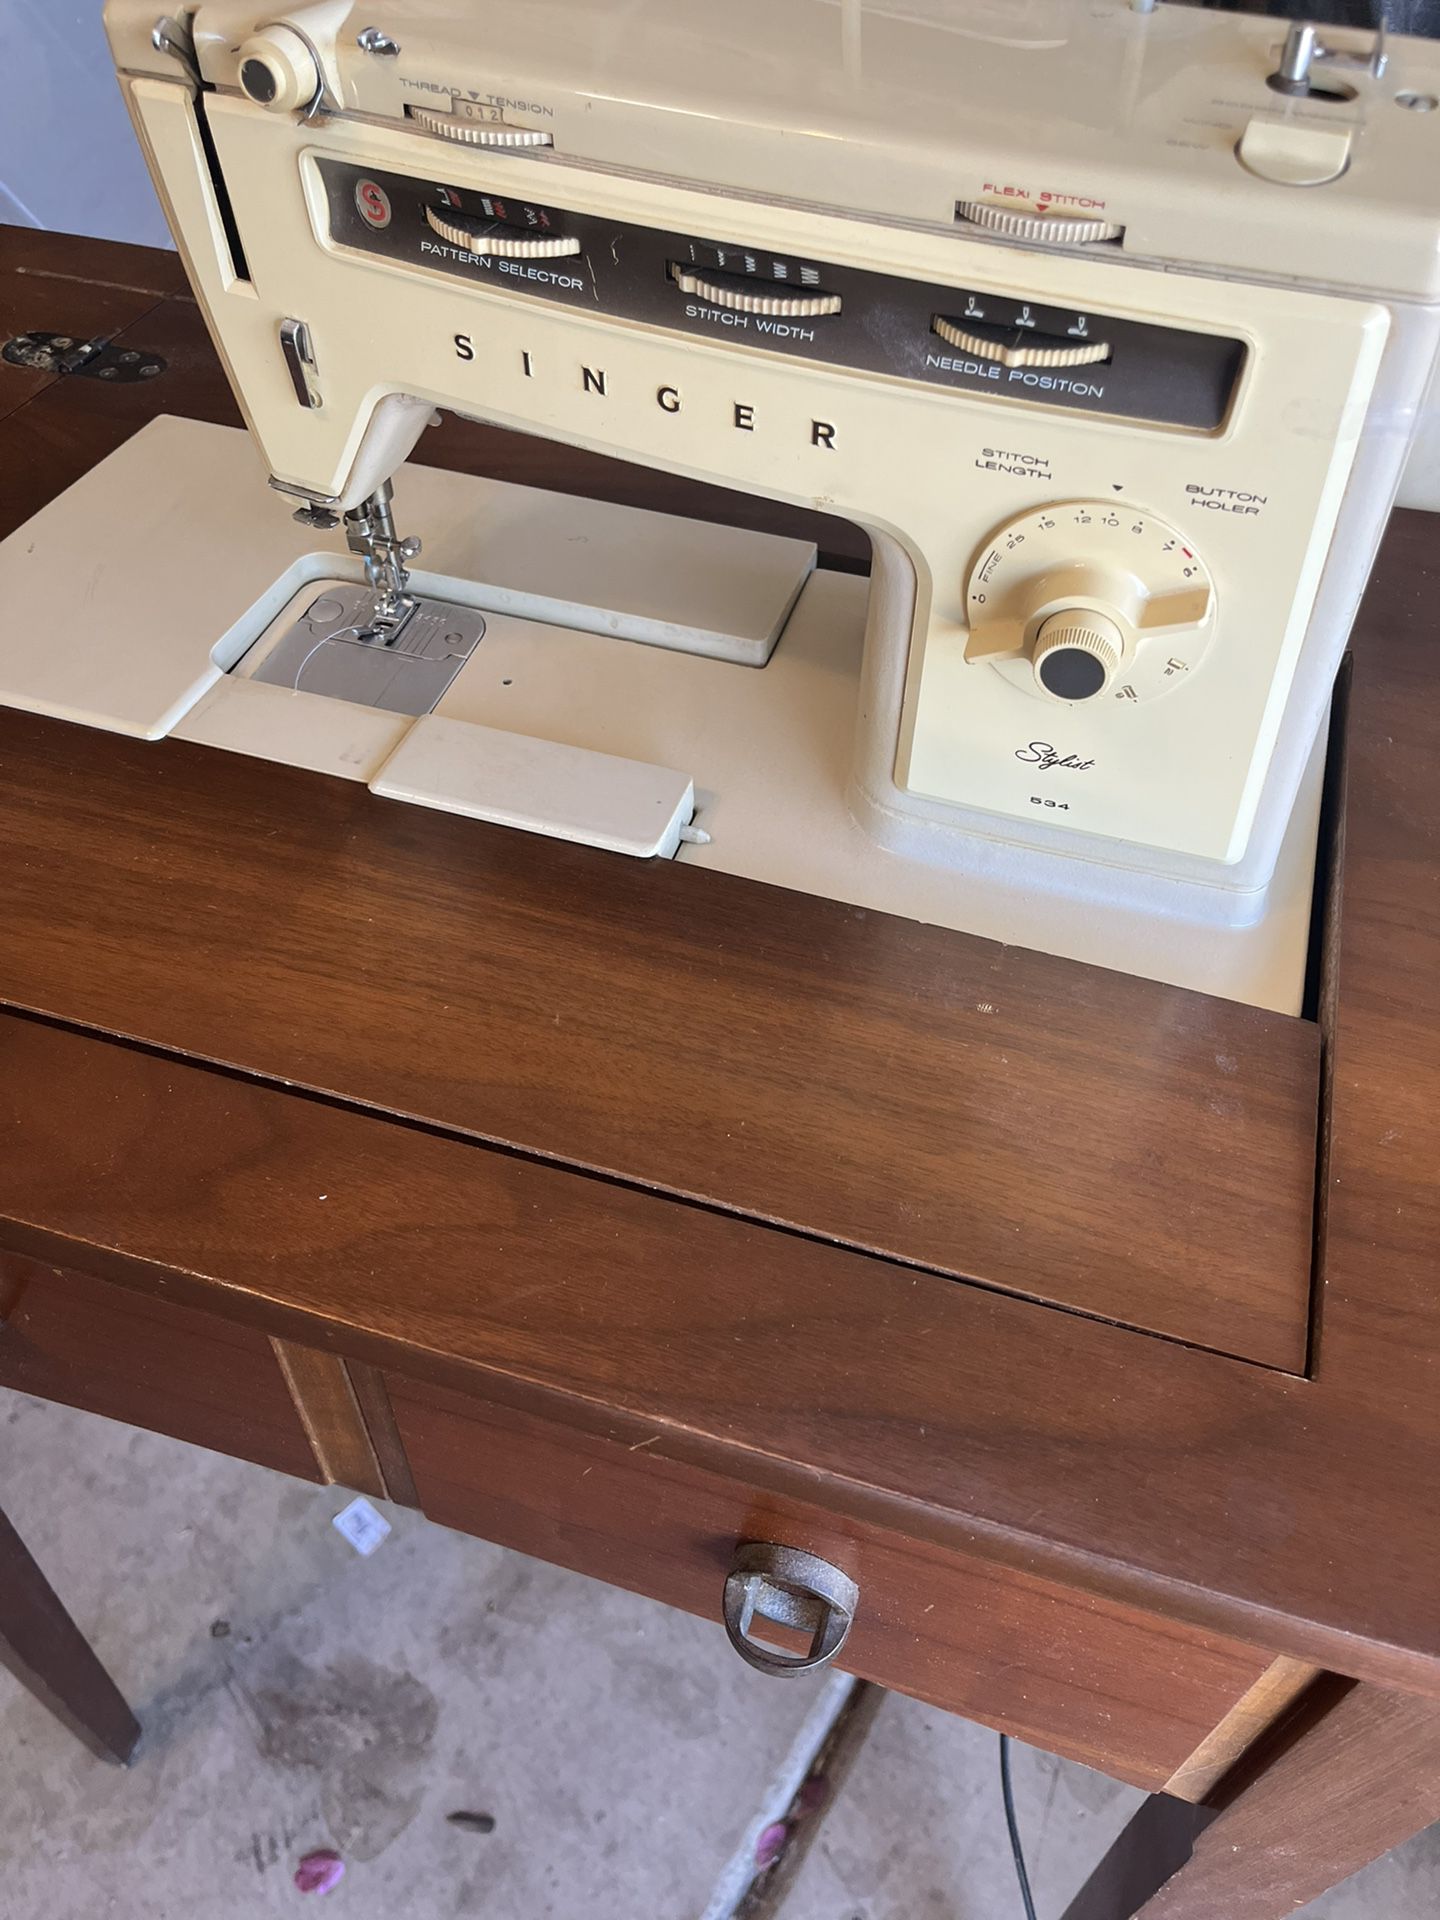 Singer Sewing Machine. 